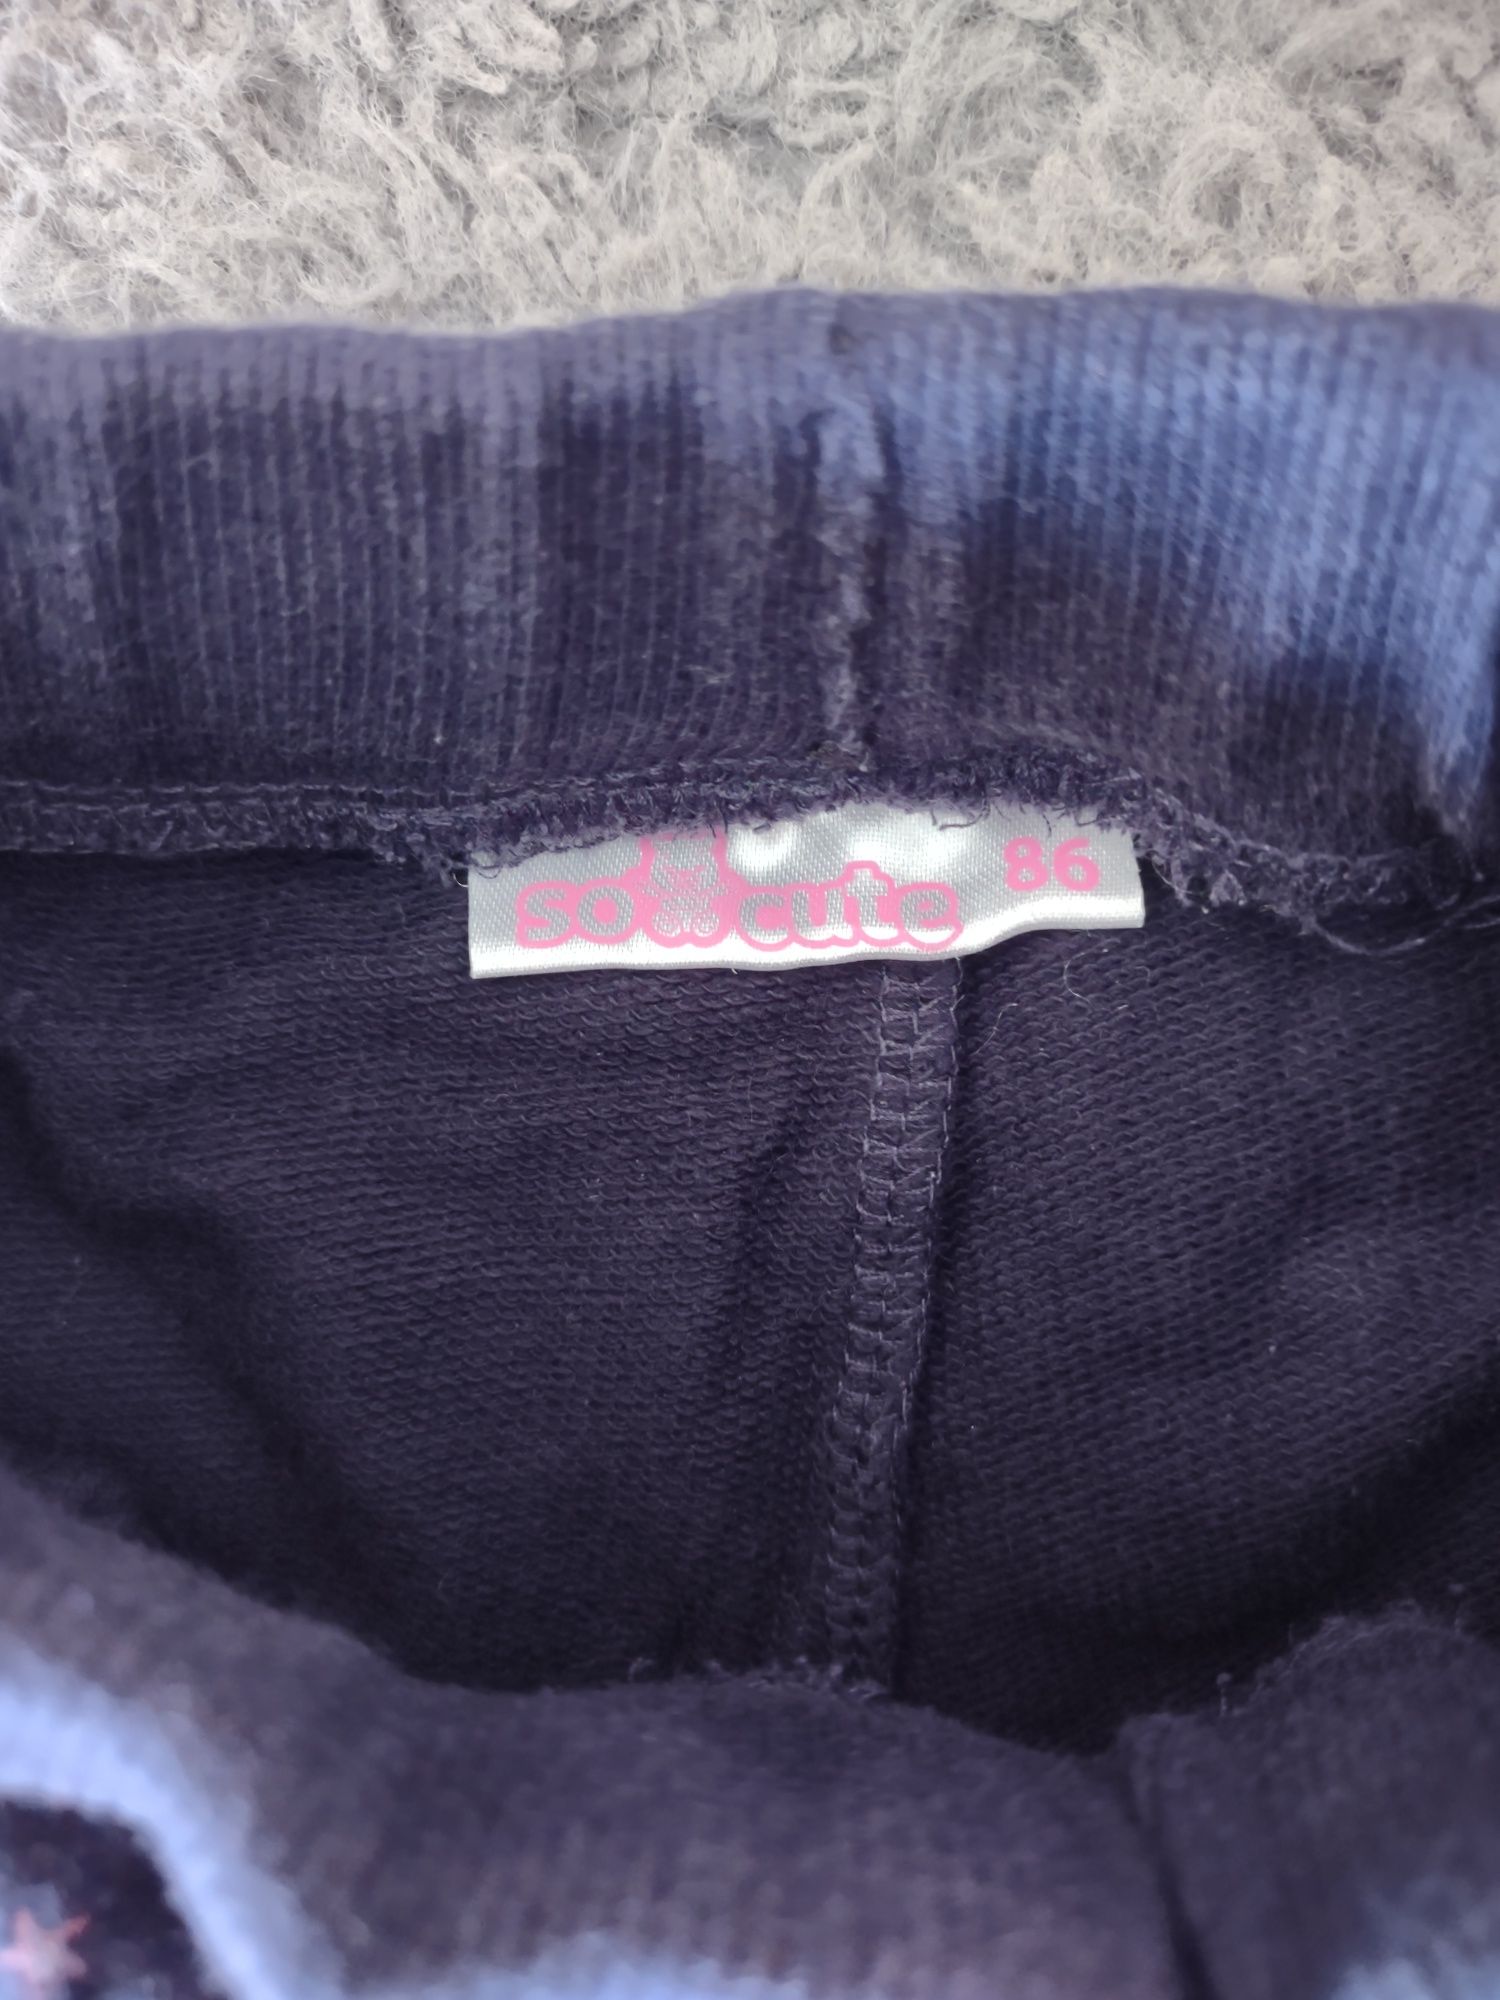 Spodnie/dresy dla dziewczynki (zestaw), rozmiar 86